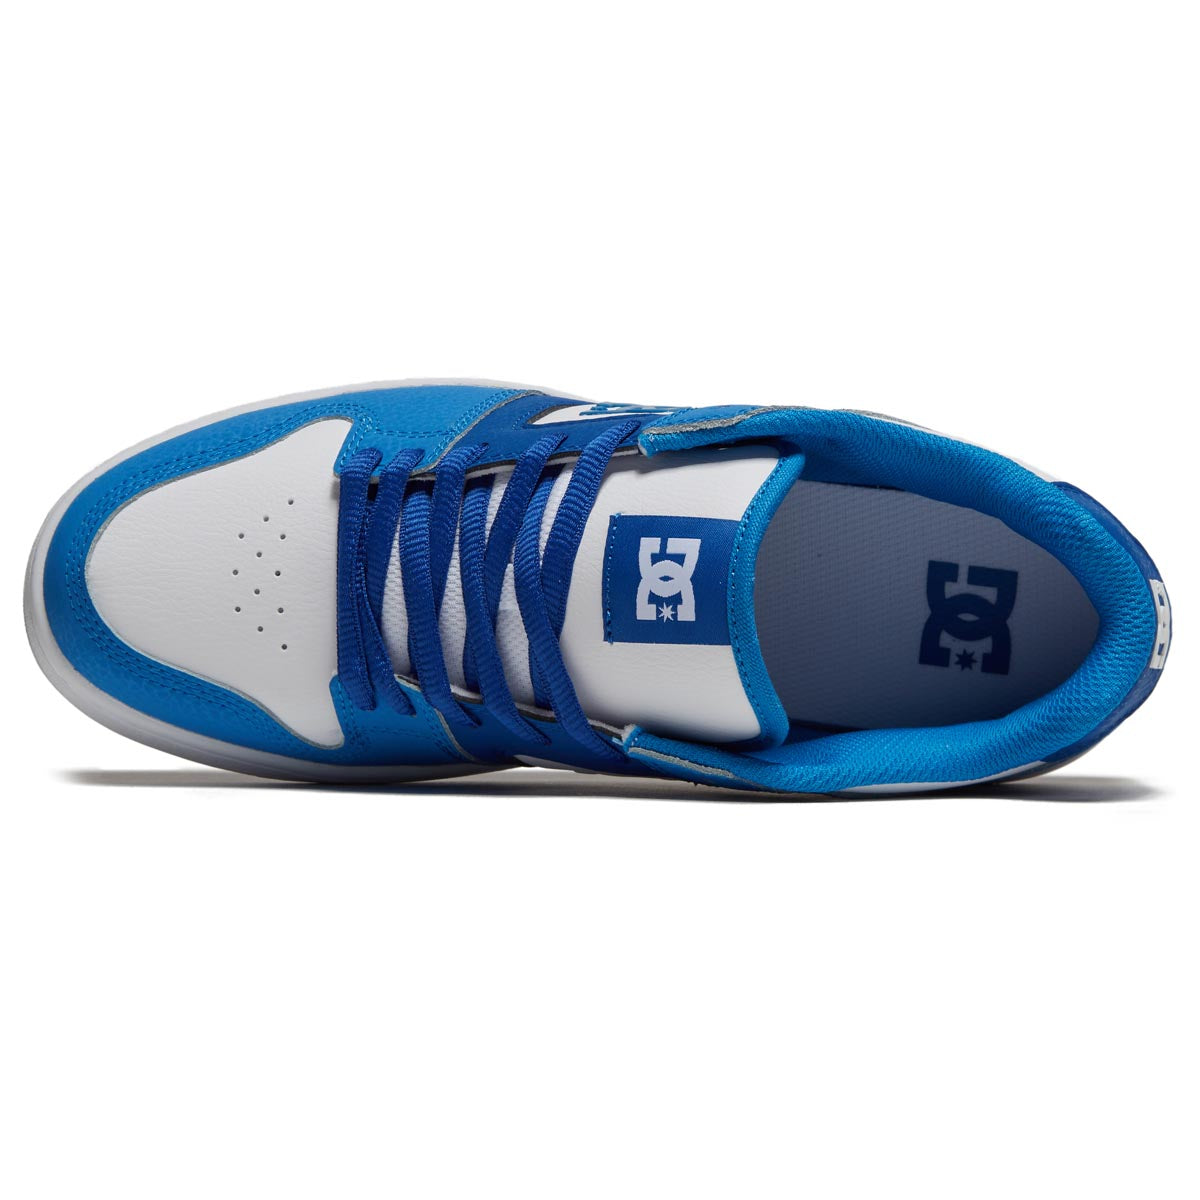 DC Manteca 4 Shoes - Blue/Blue/White image 3